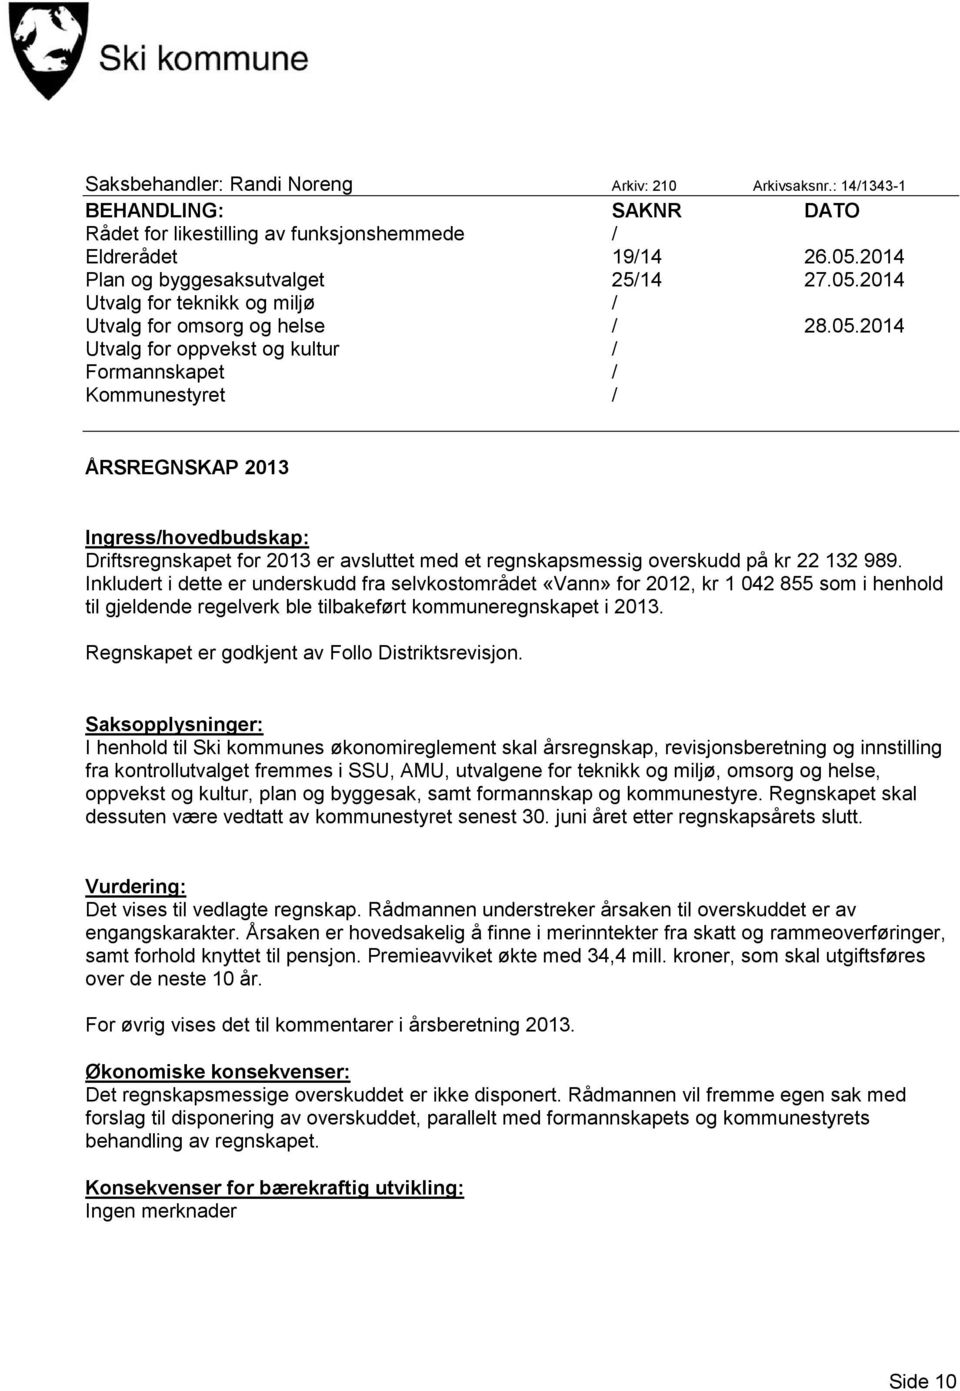 2014 Utvalg for teknikk og miljø / Utvalg for omsorg og helse / 28.05.